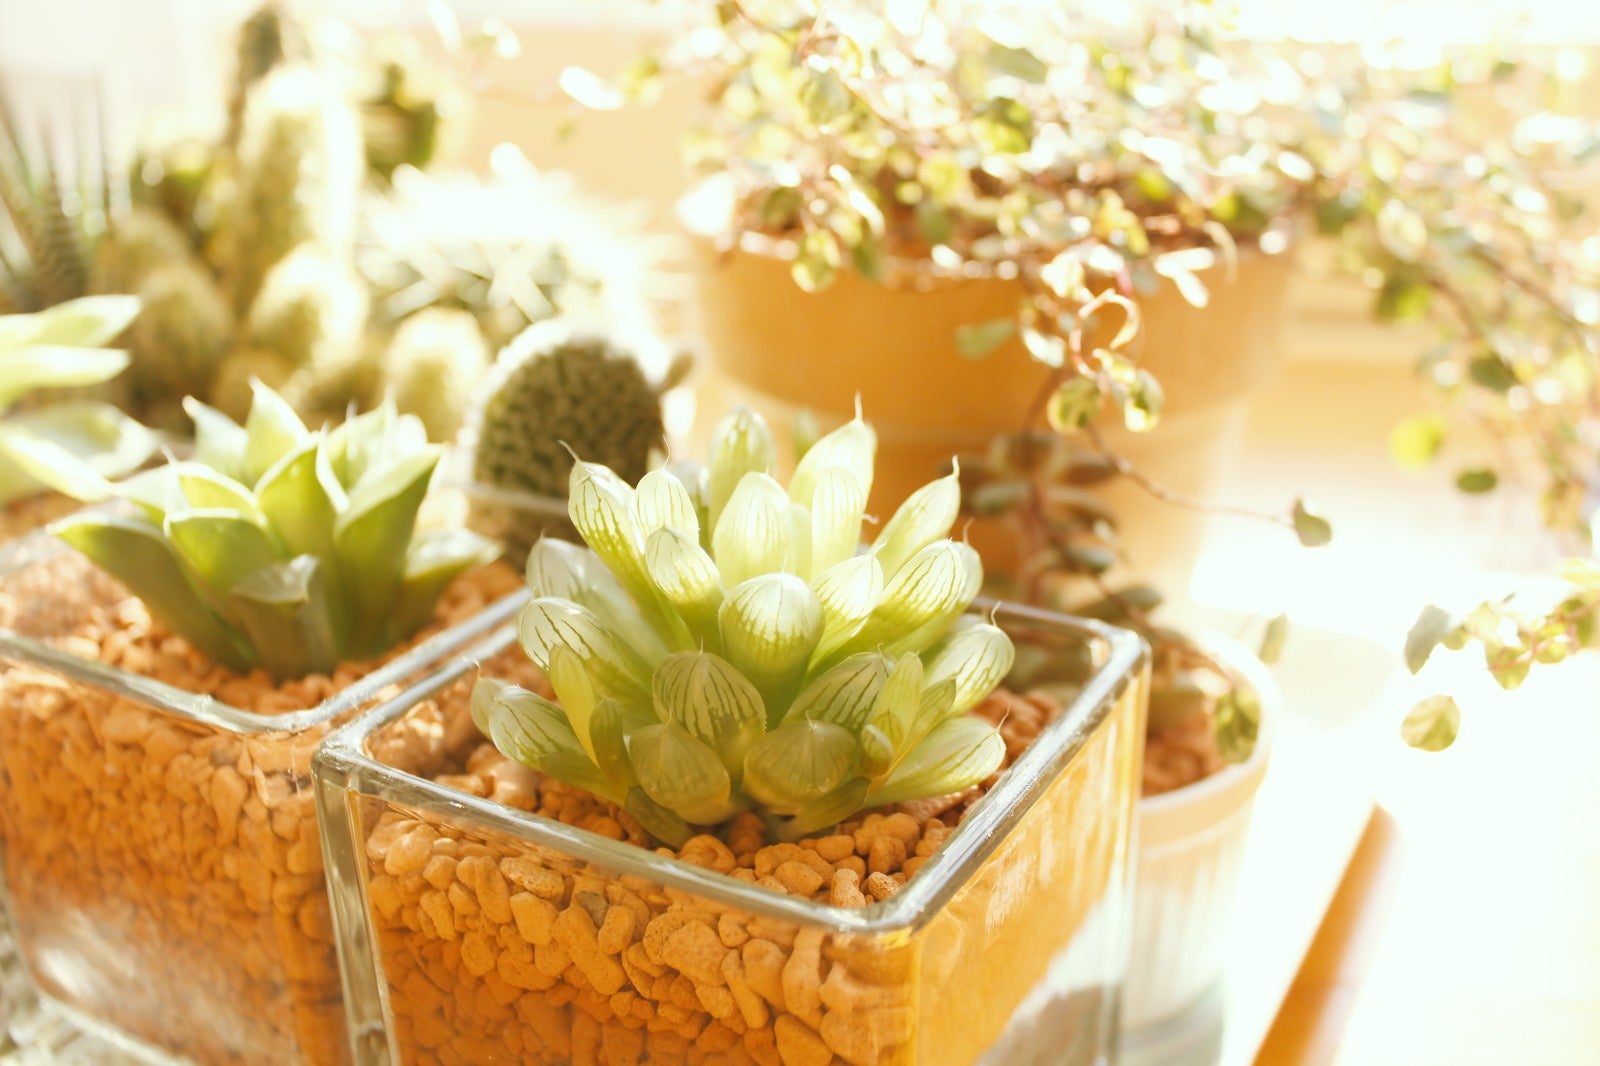 「窓辺の植物」の写真